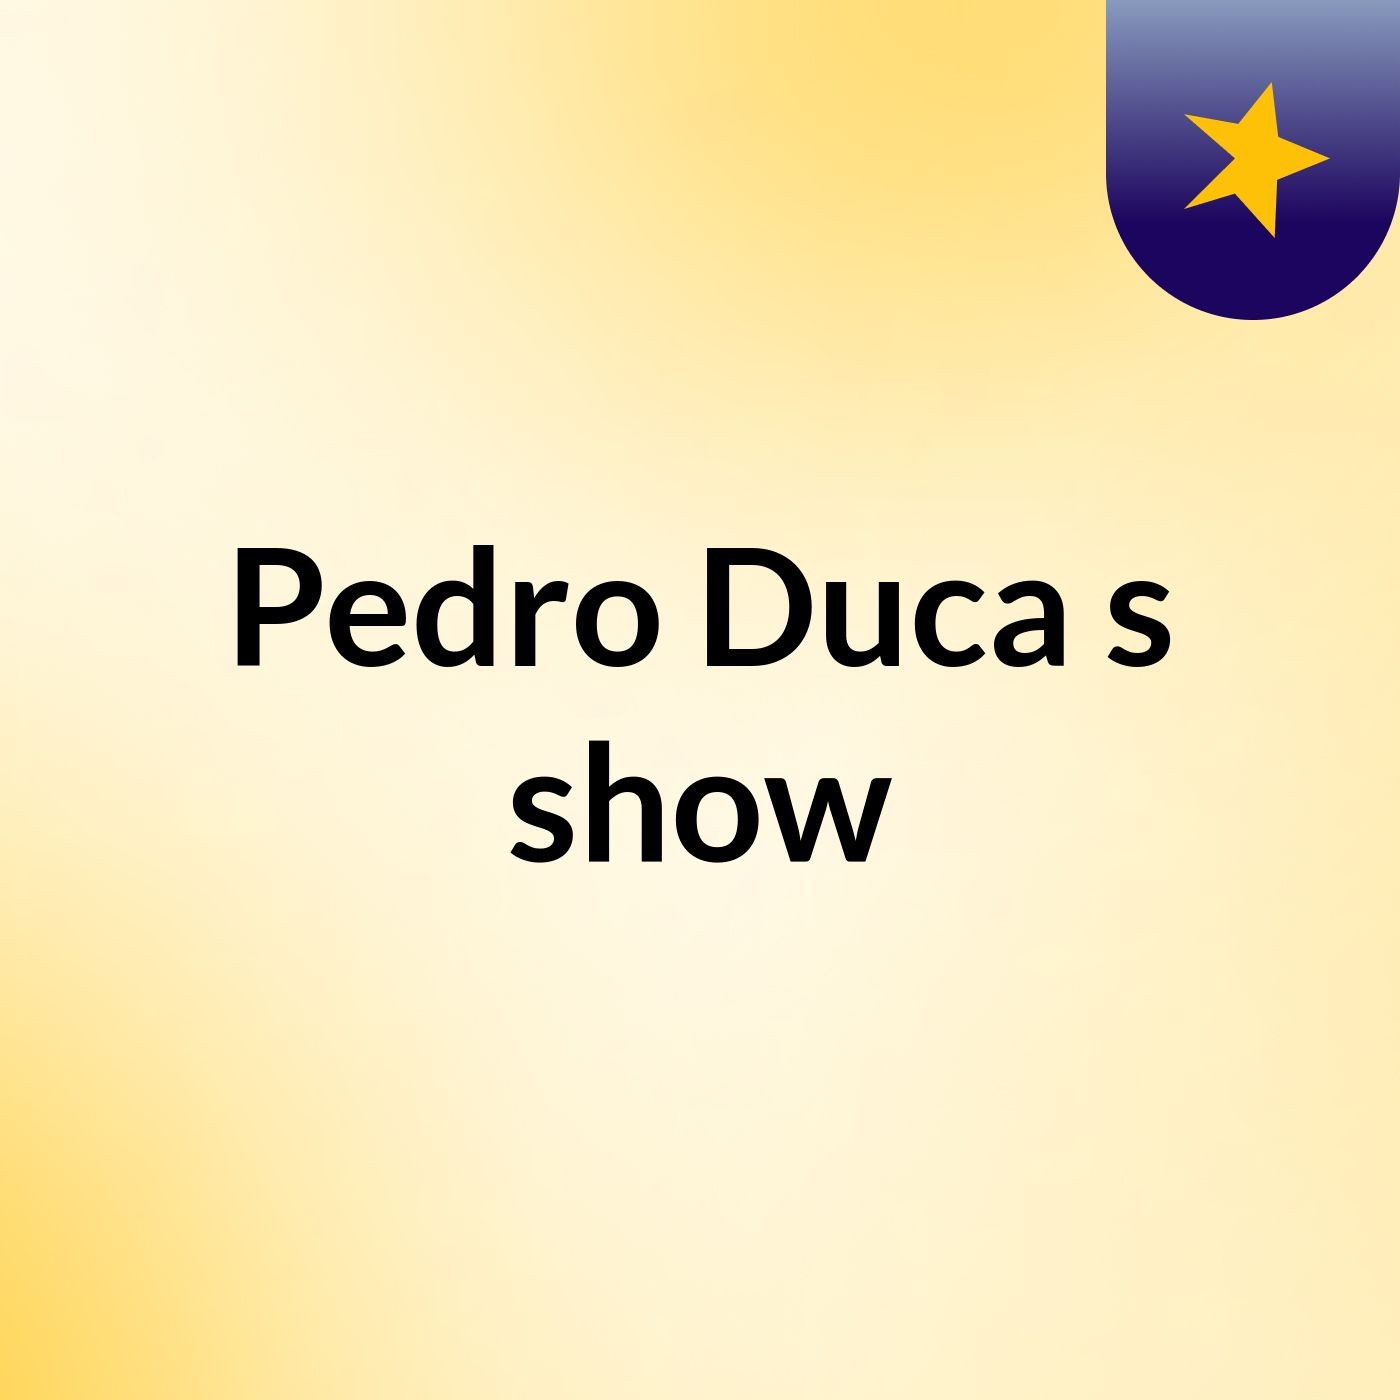 Pedro Duca's show